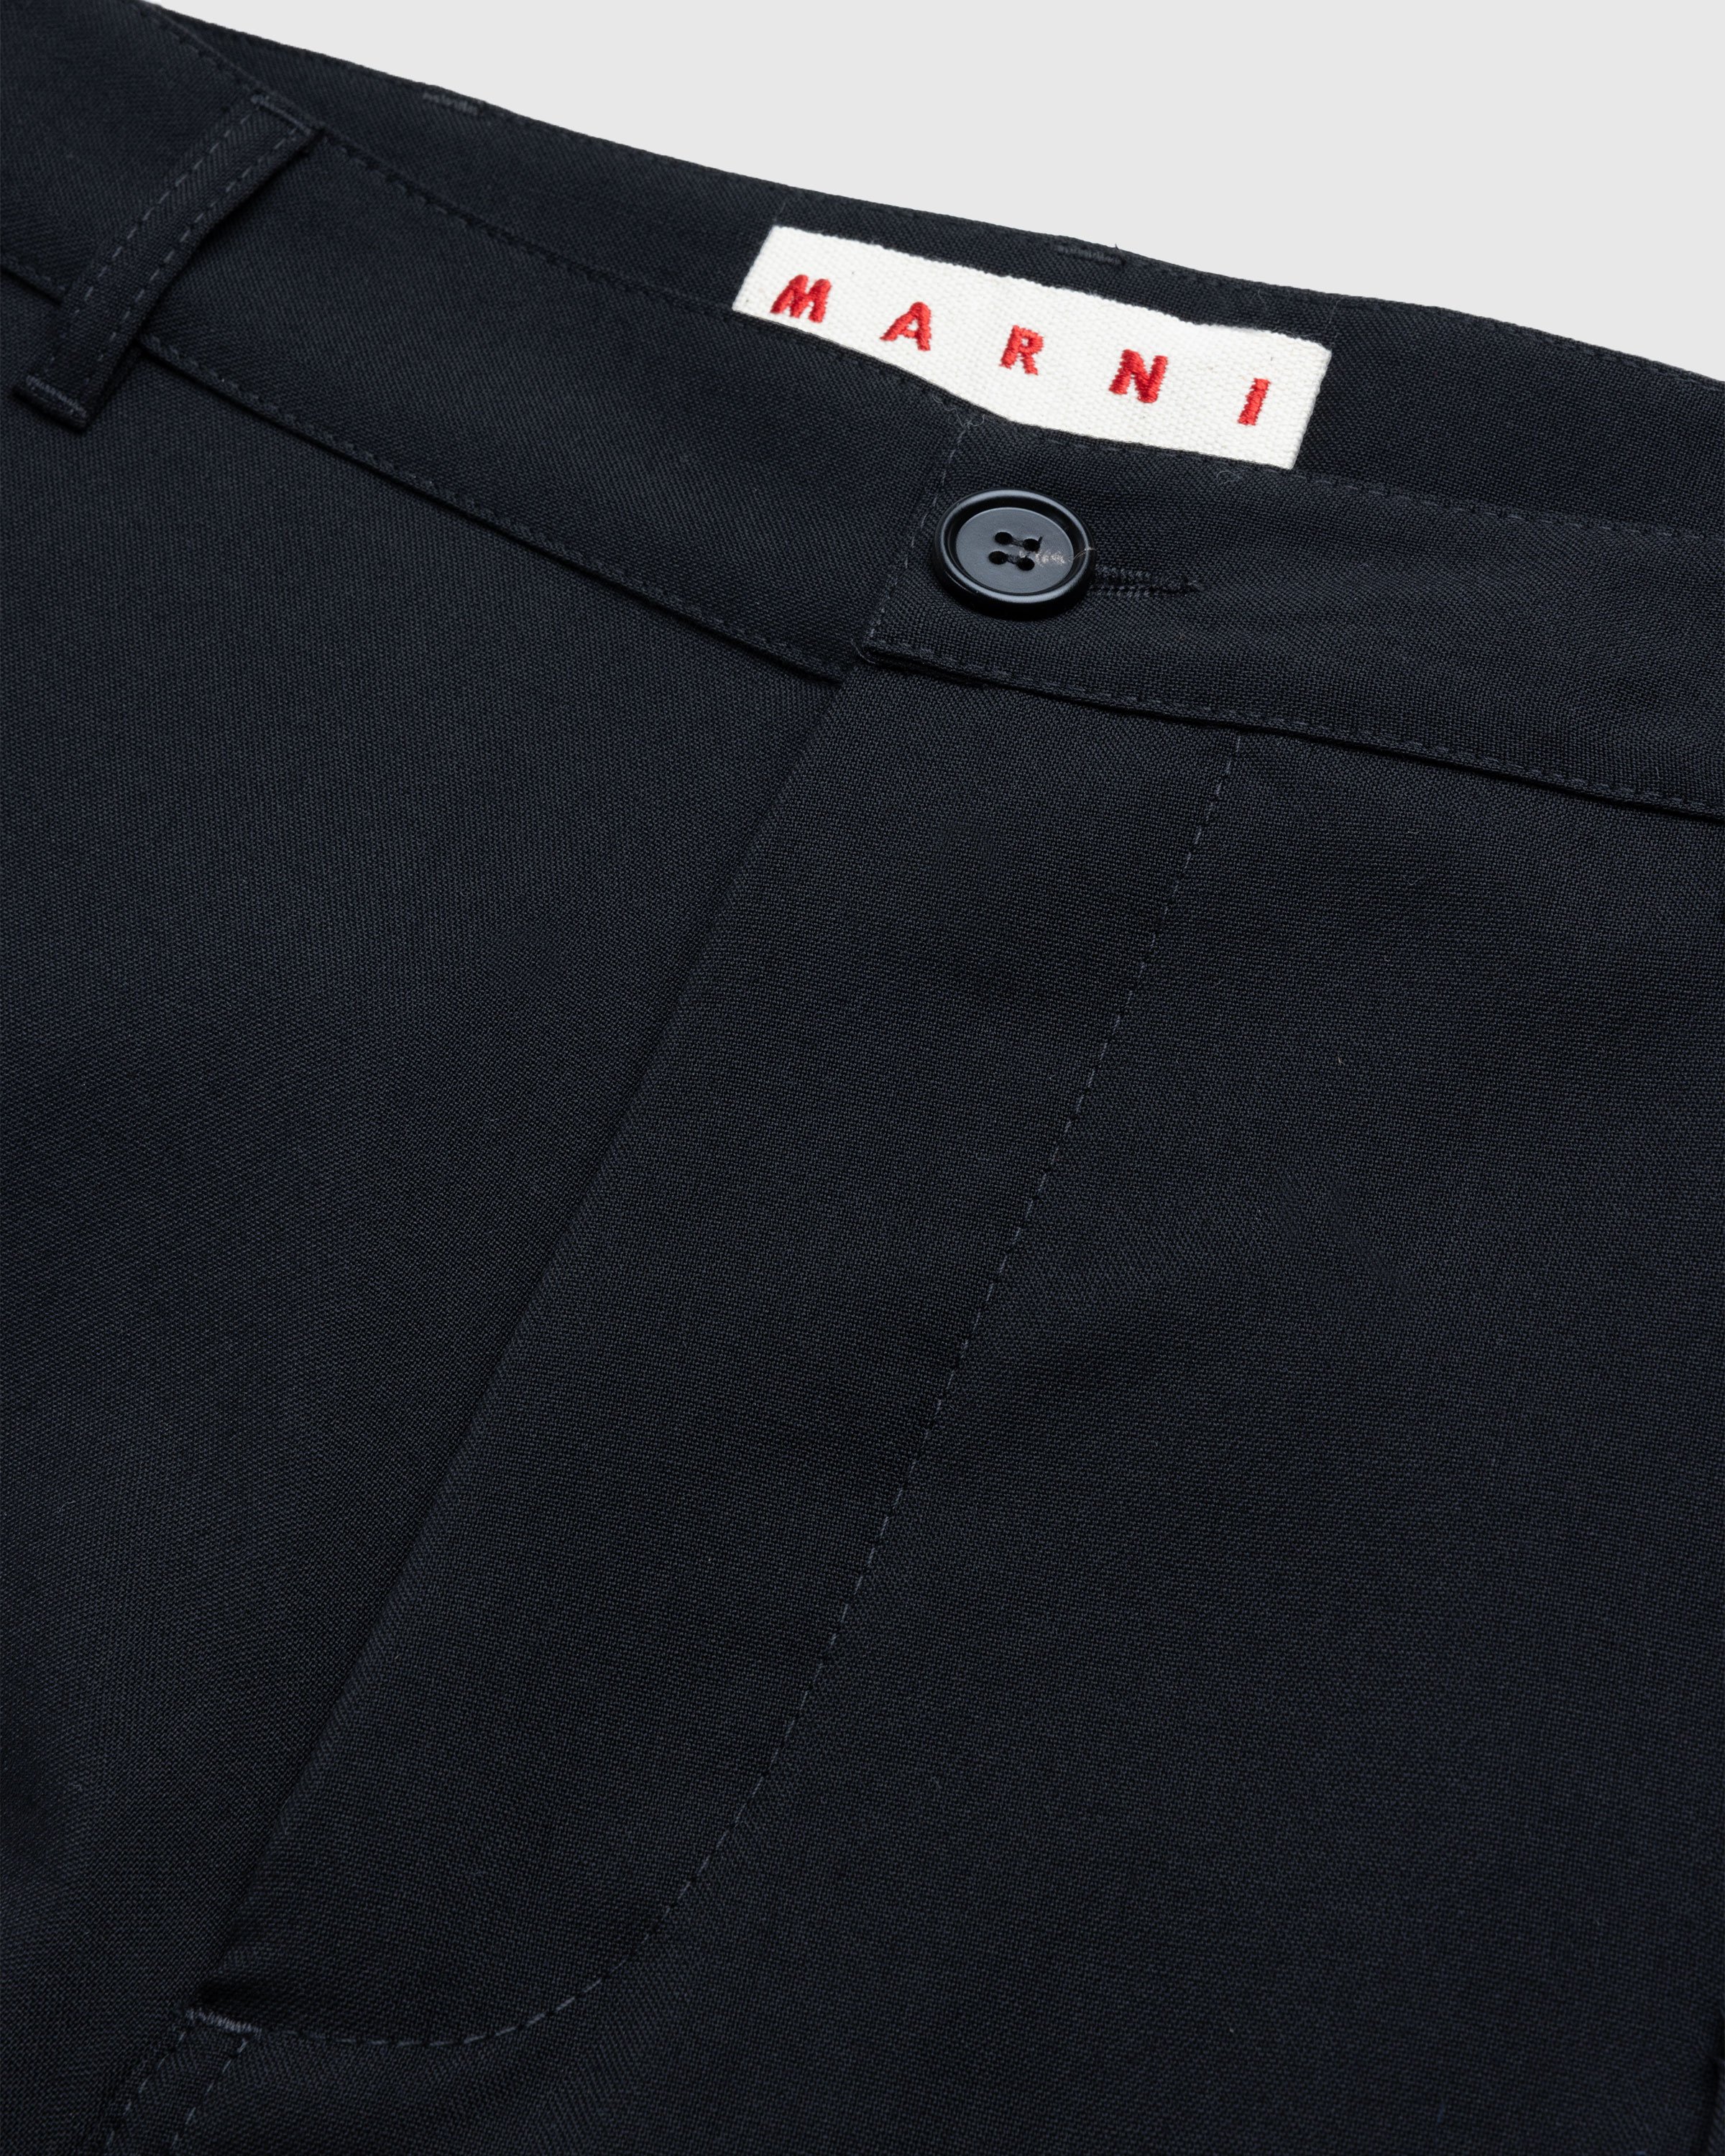 Marni - Cargo Pocket Wool Trousers Black - Clothing - Black - Image 5